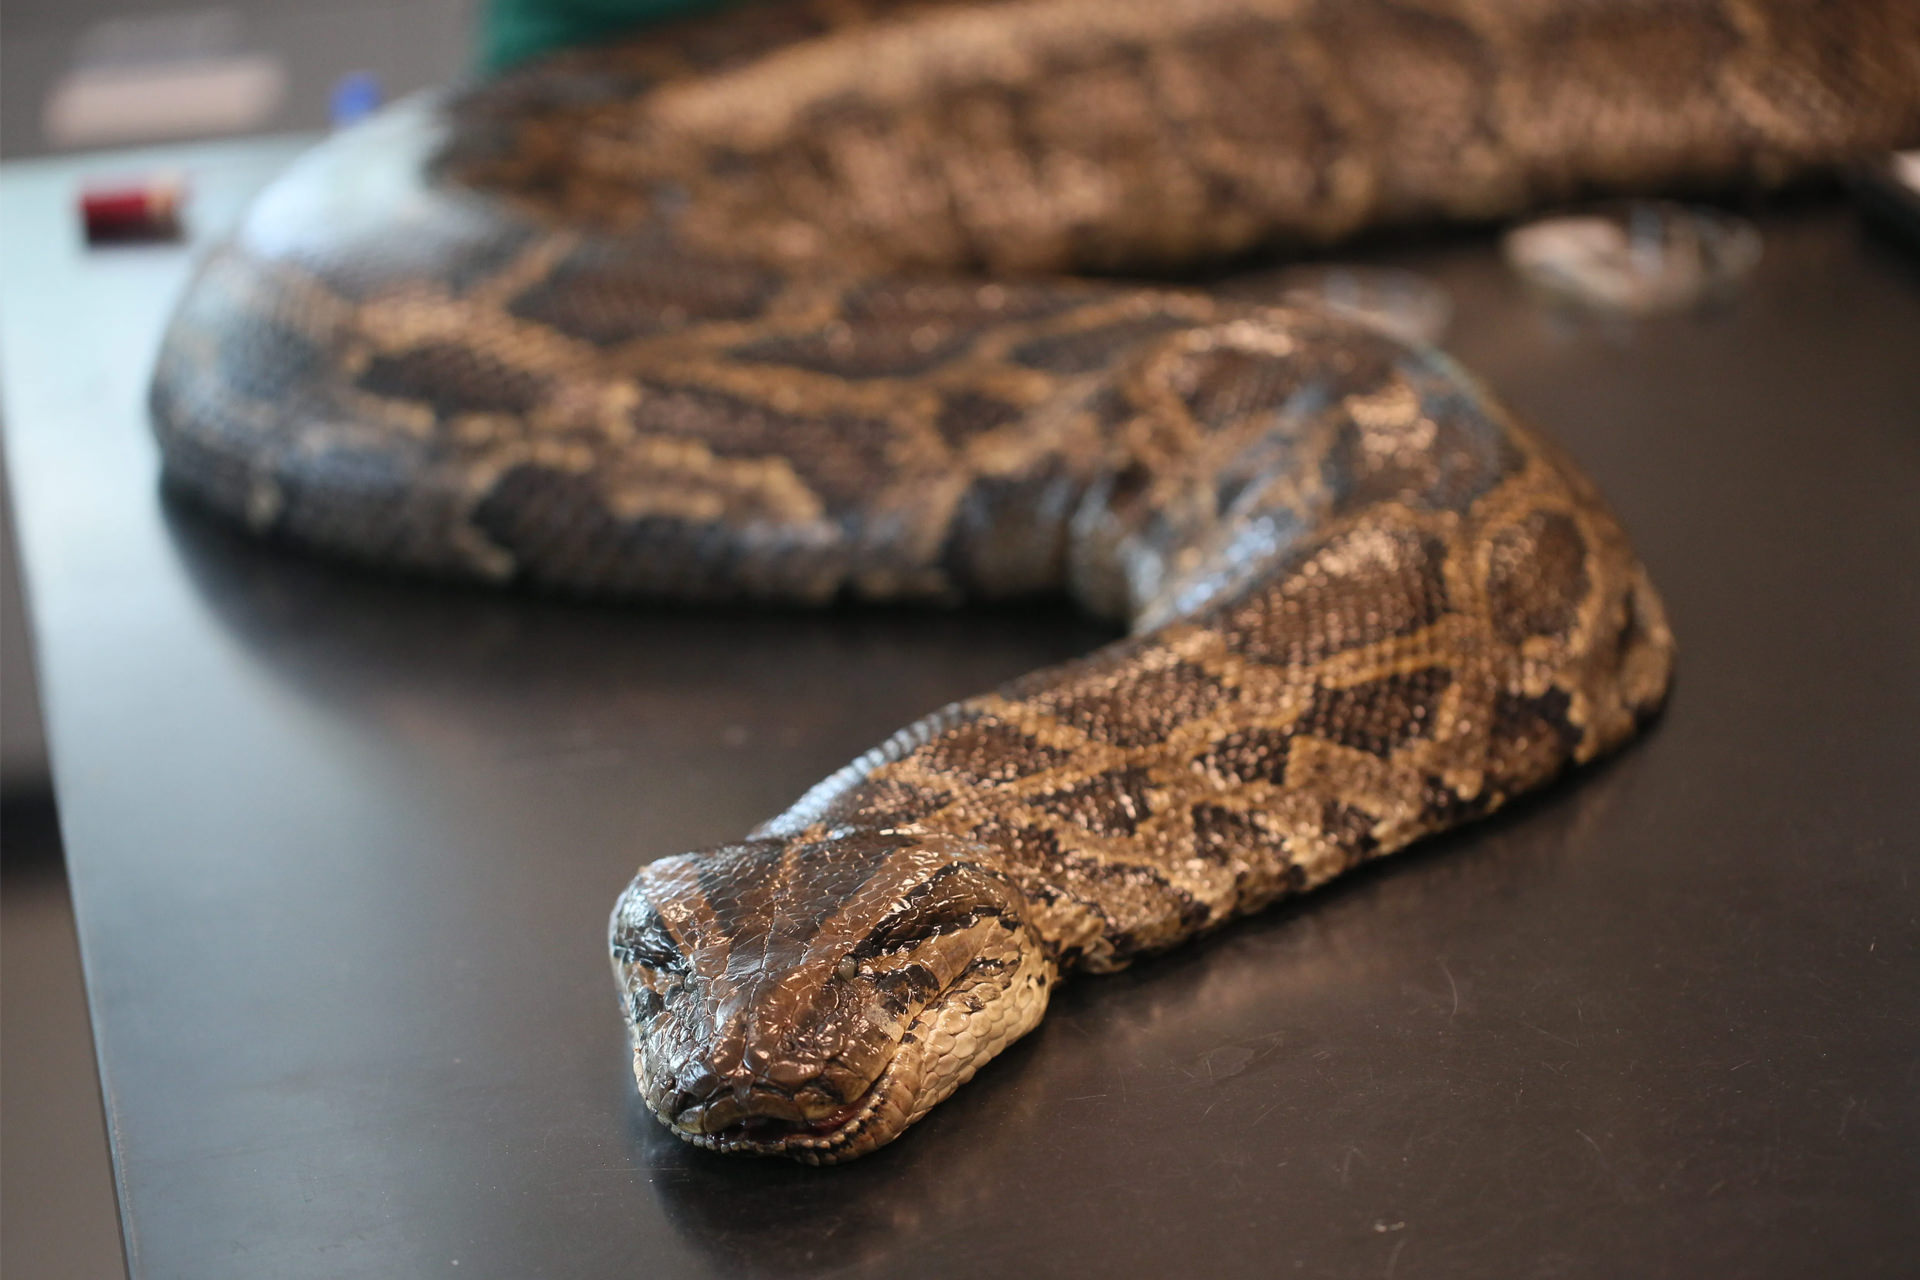 100 kg Florida python on the table